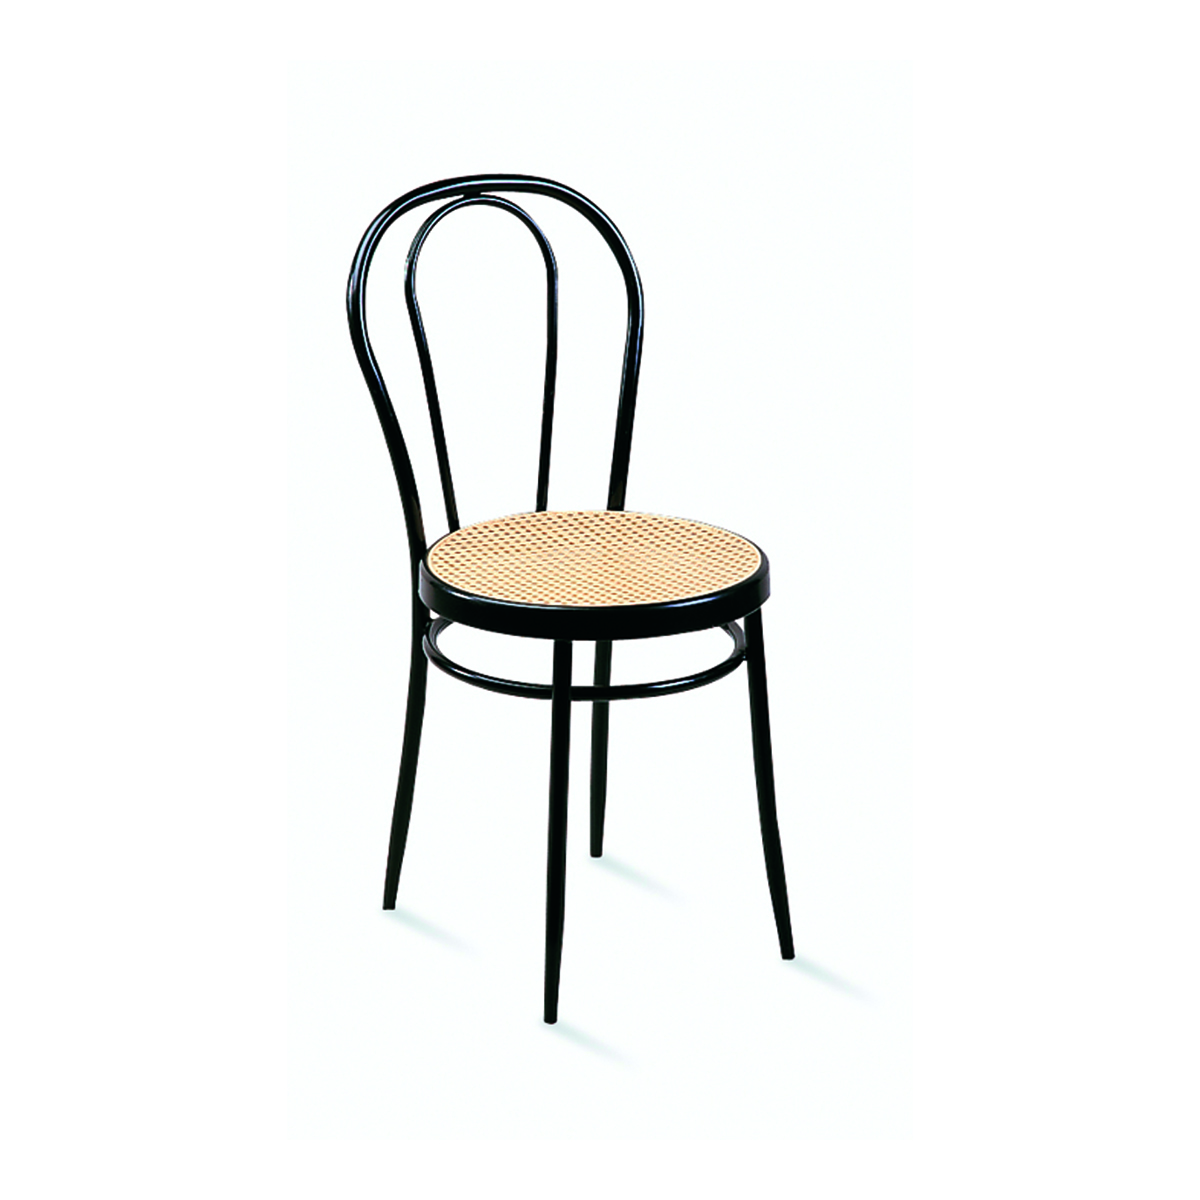 Café Chair